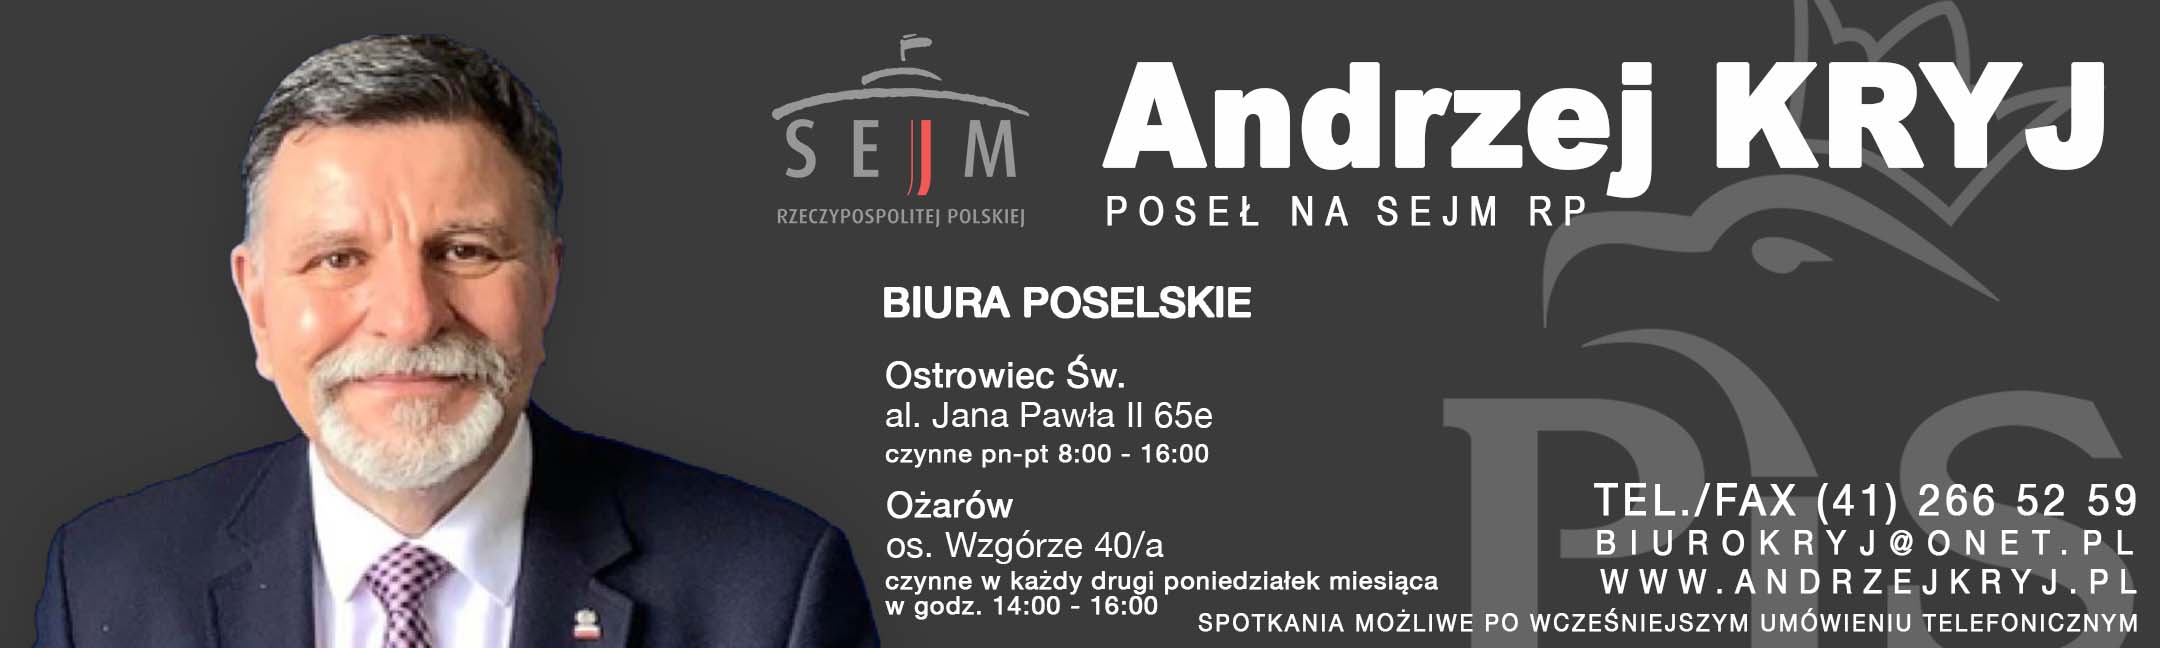 AndrzejKryj